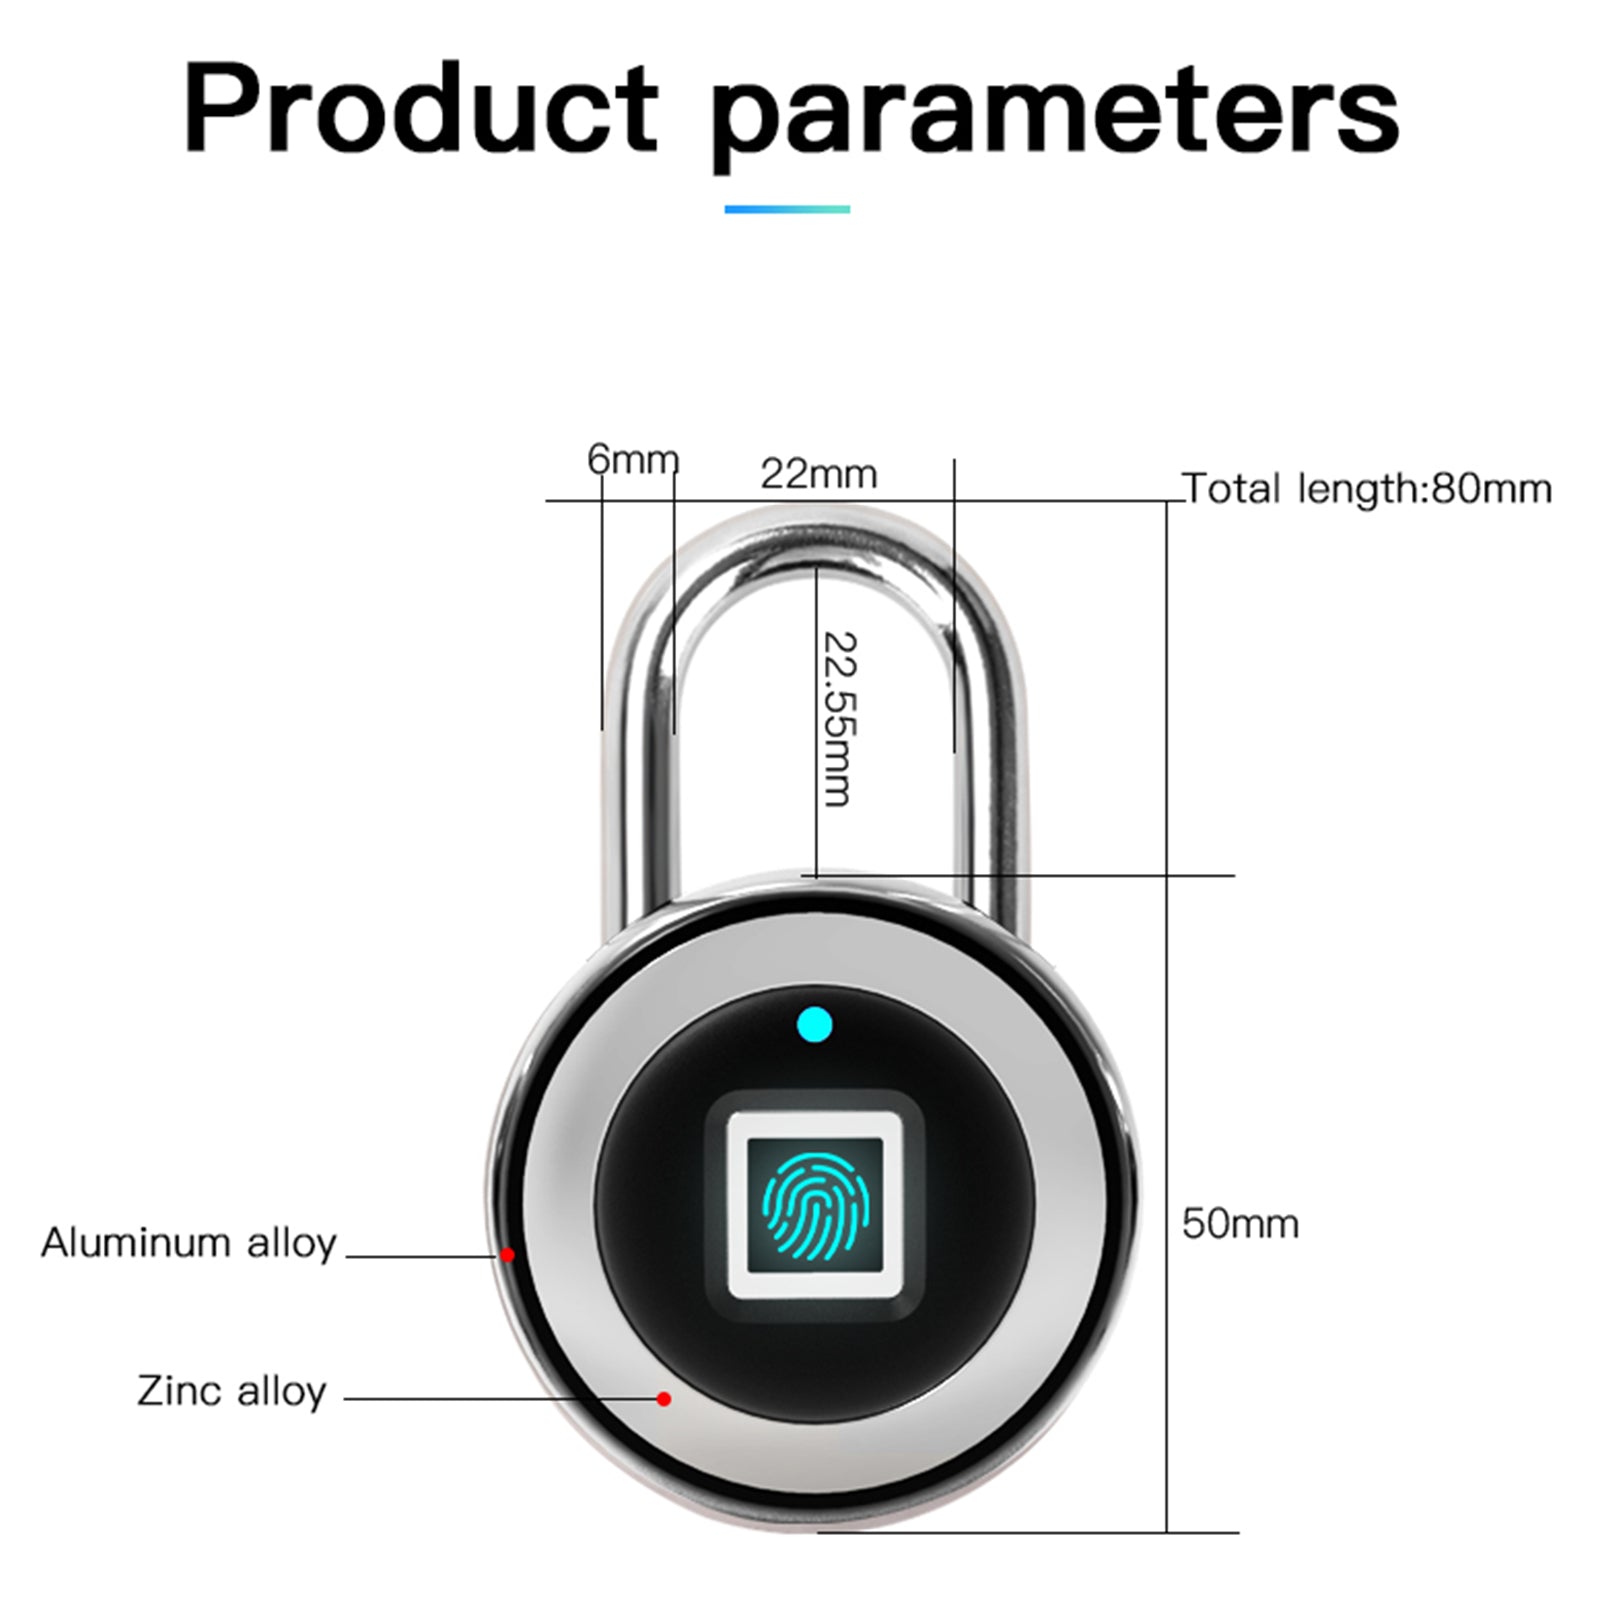 Fingerprint Padlock Smart  Keyless One Touch Open Waterproof for Gym Bike School Handbags Door, Black